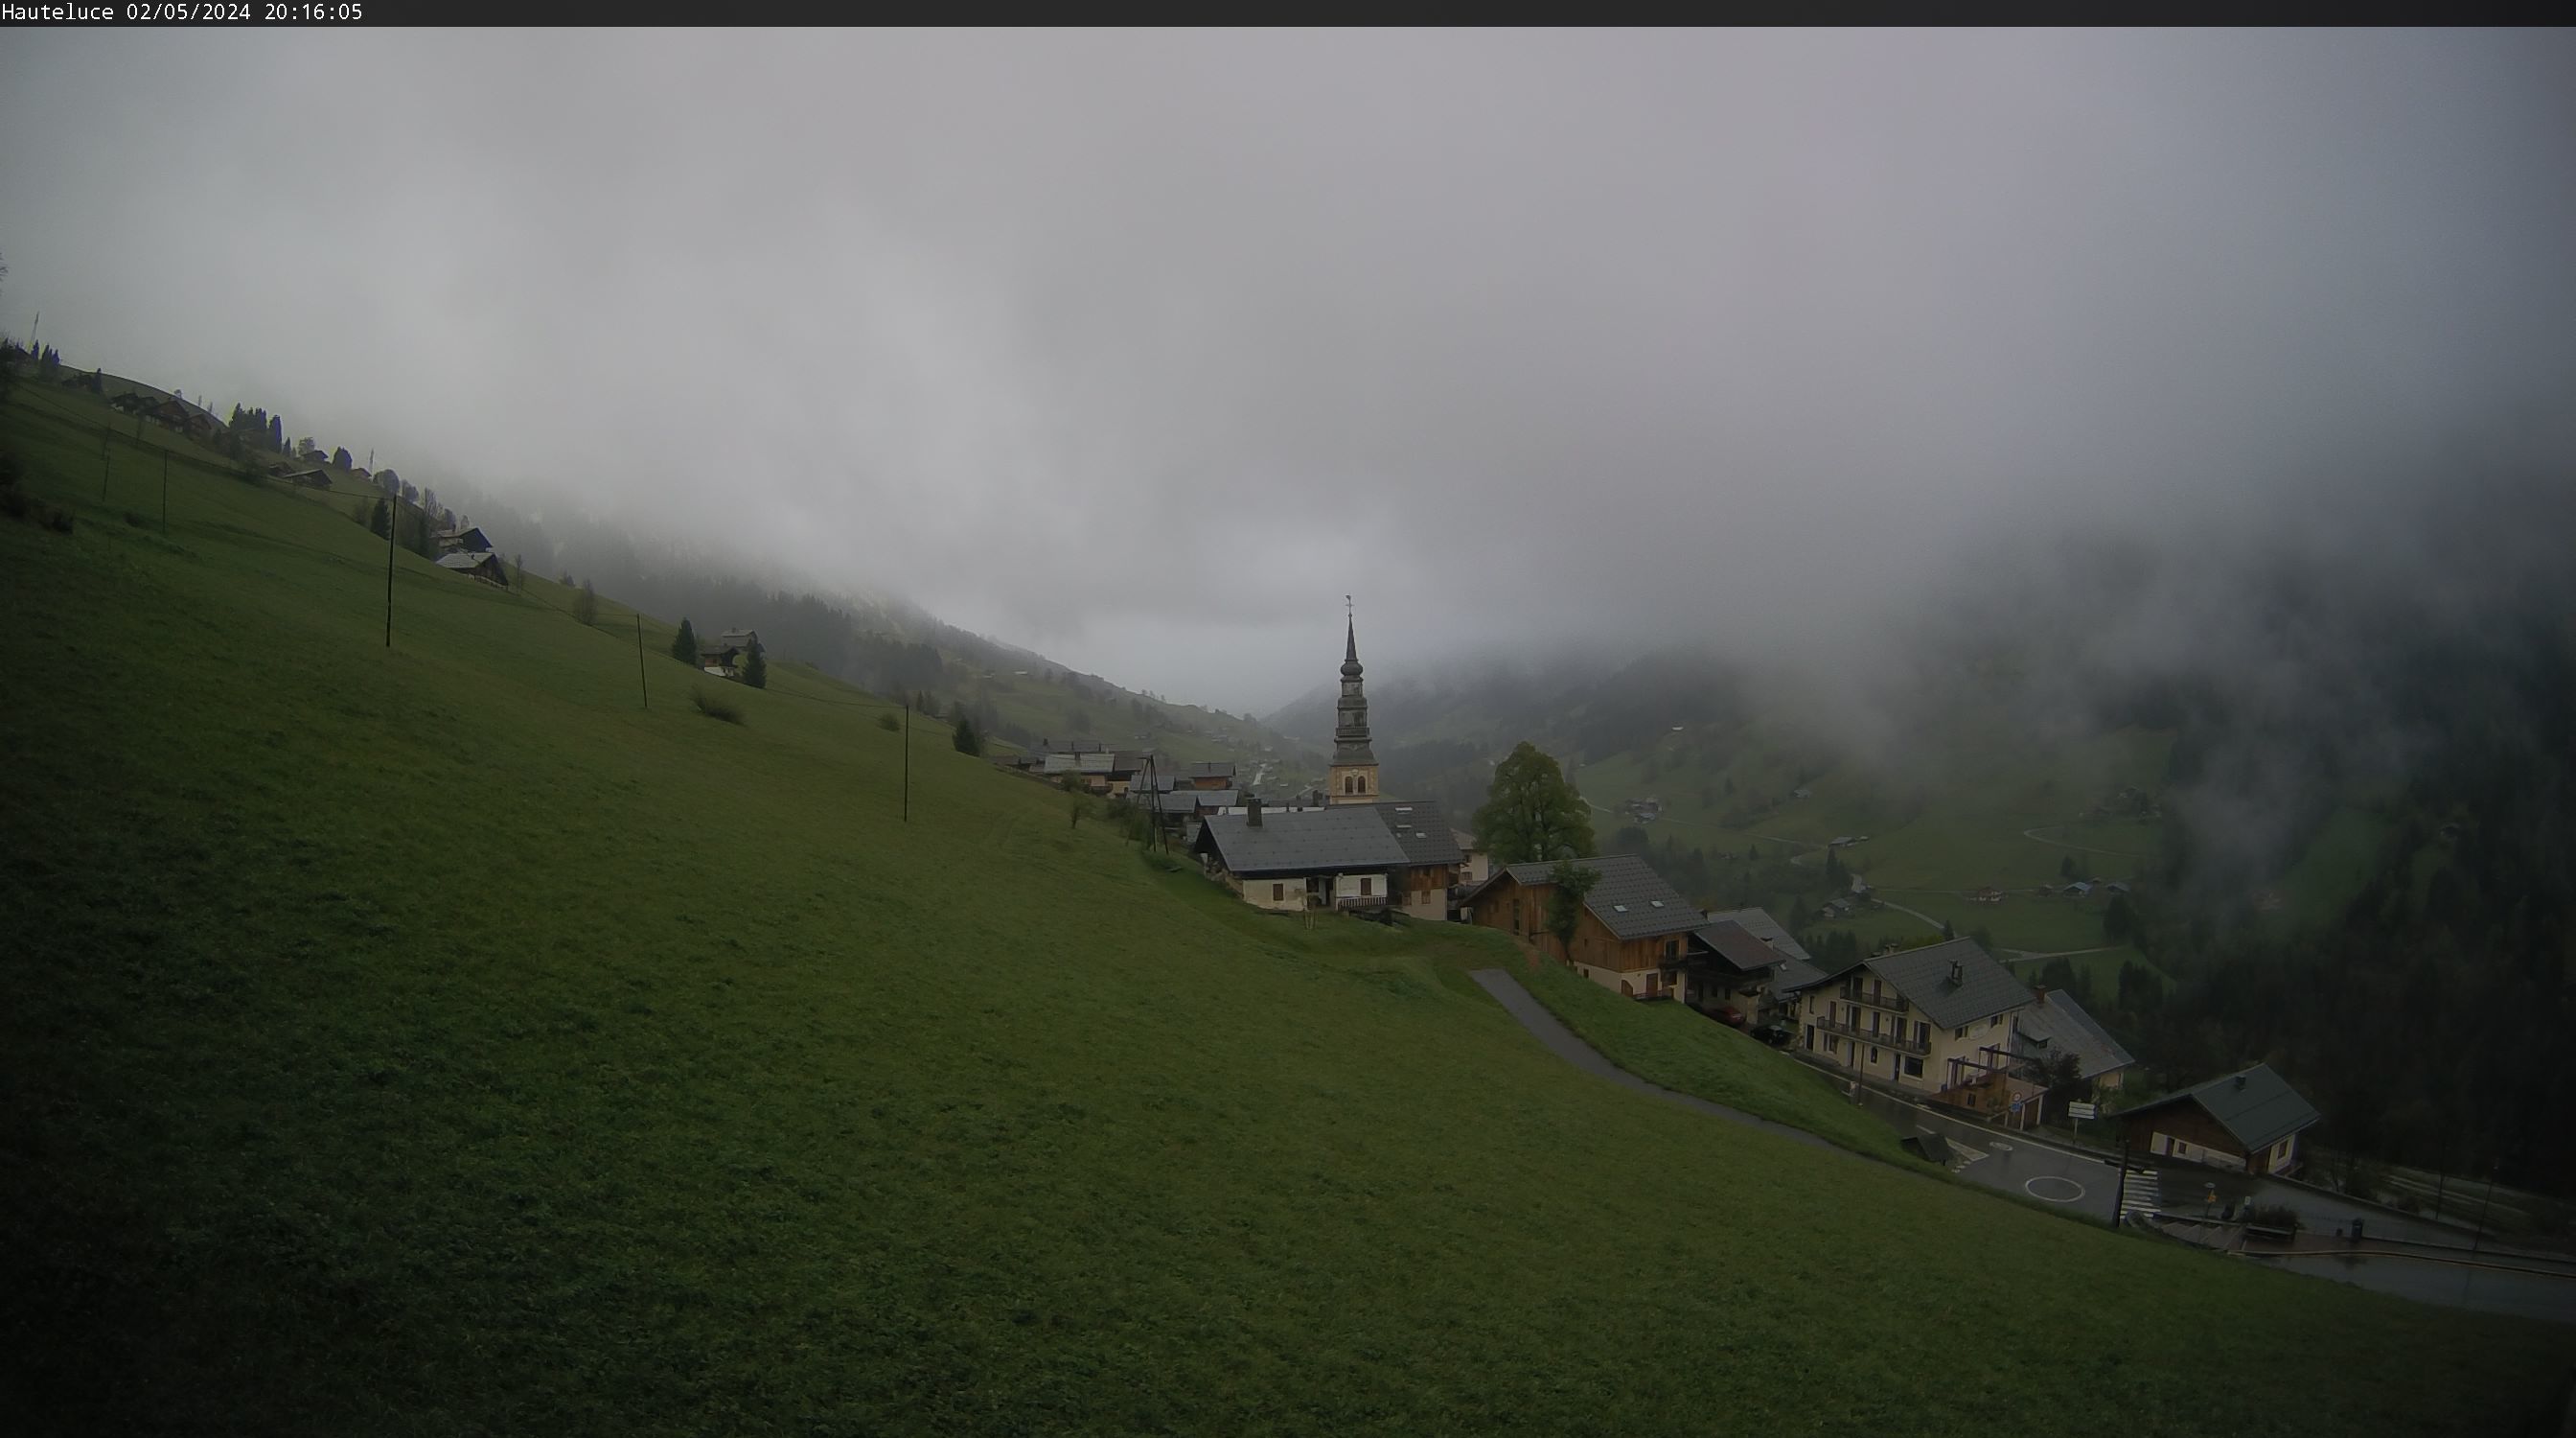 Webcam Hauteluce, avec vue sur le village et le Mont-Blanc